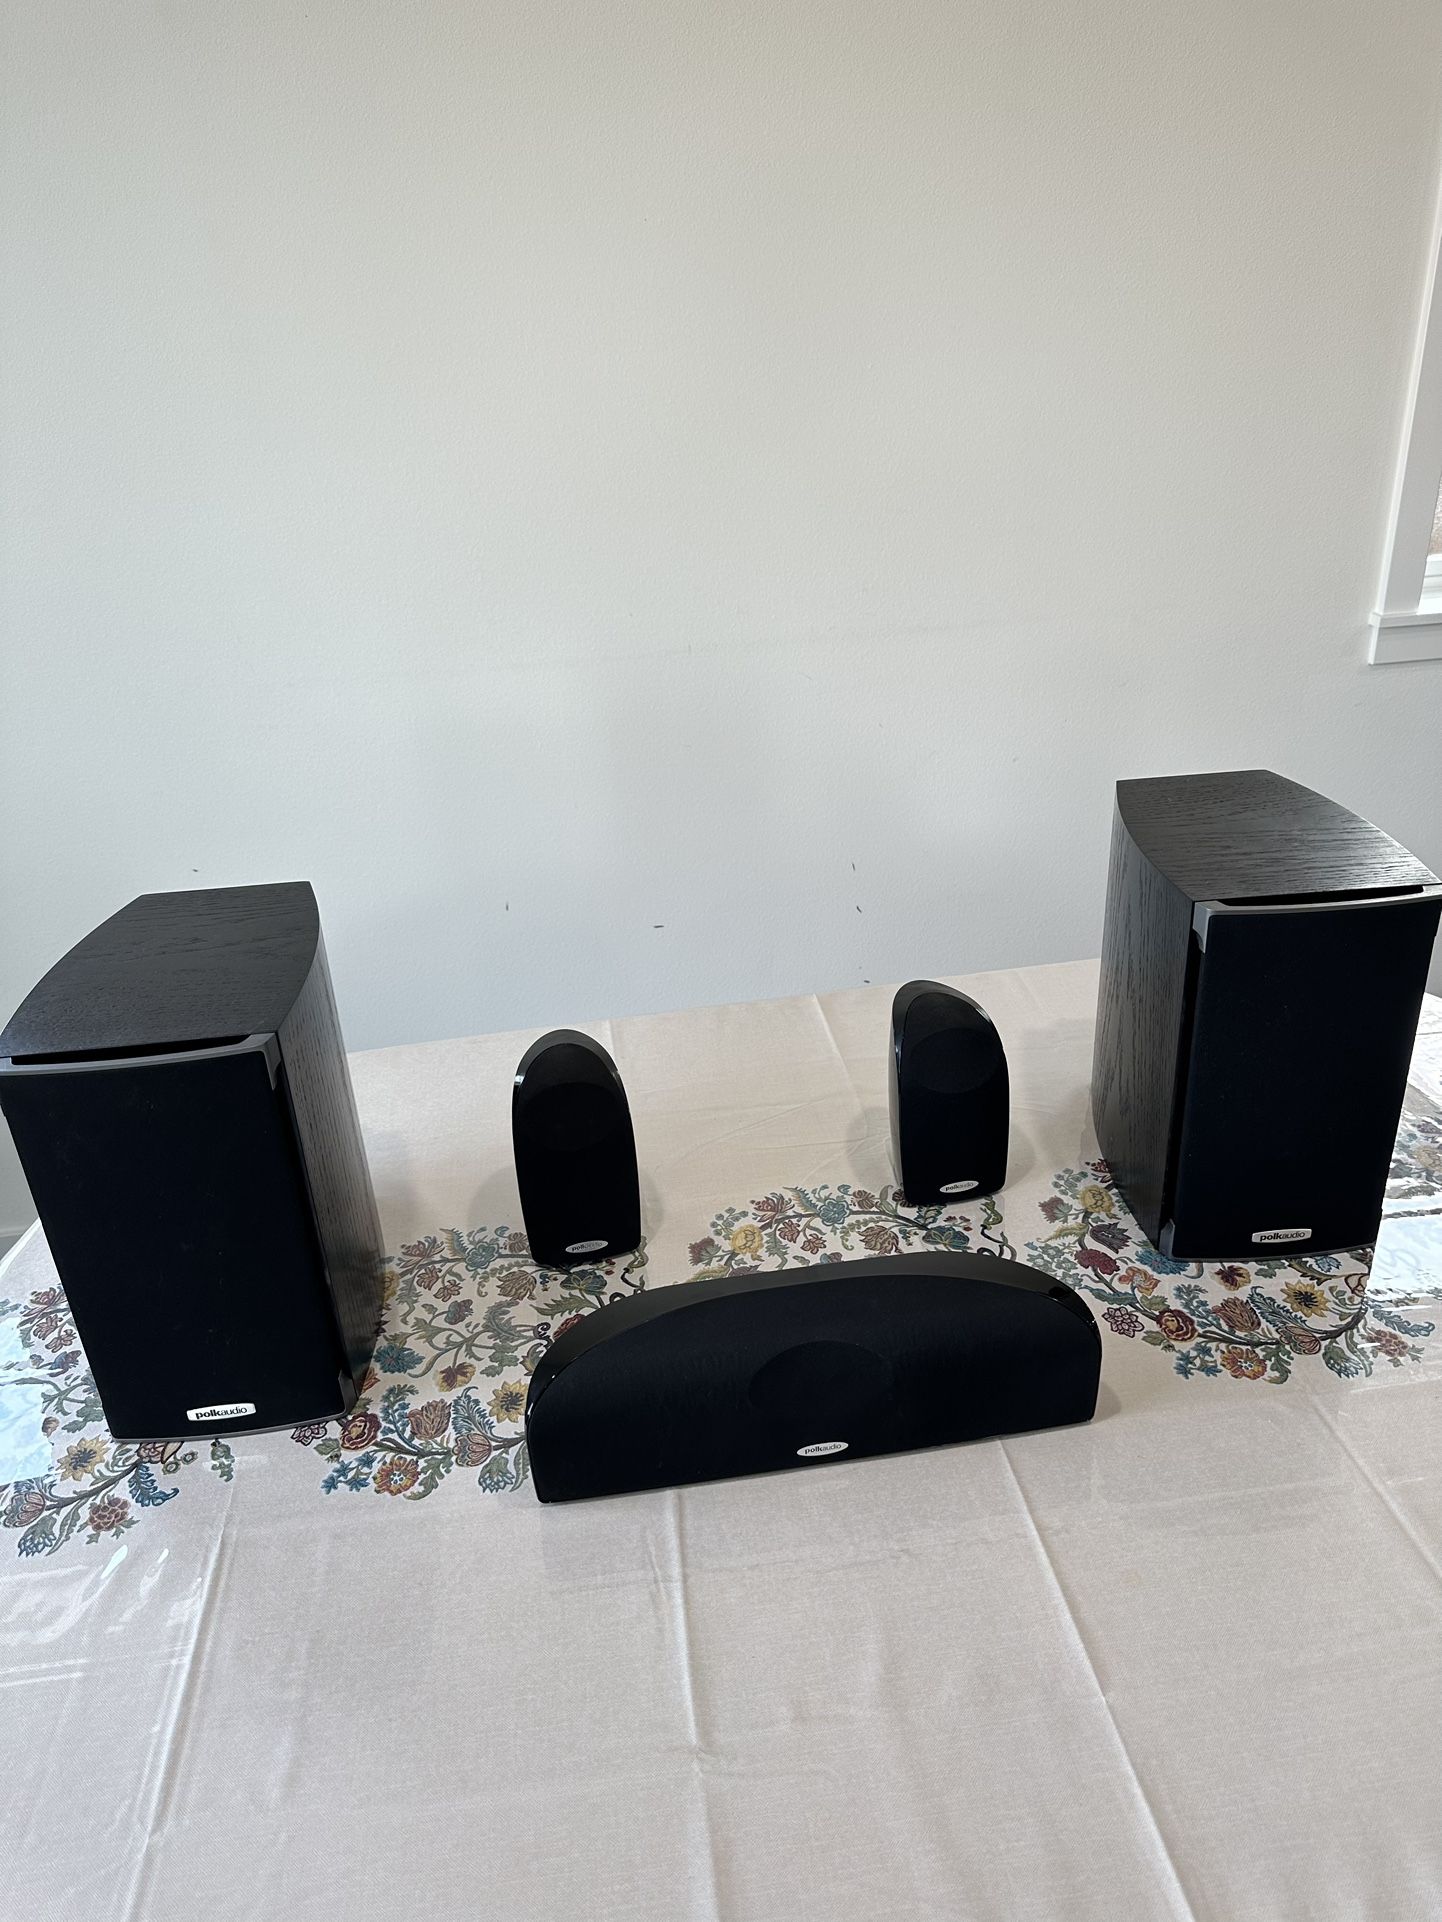 Polk Audio system (2 bookshelf speakers + 2 Satellite Speakers + 1 Center Speaker)